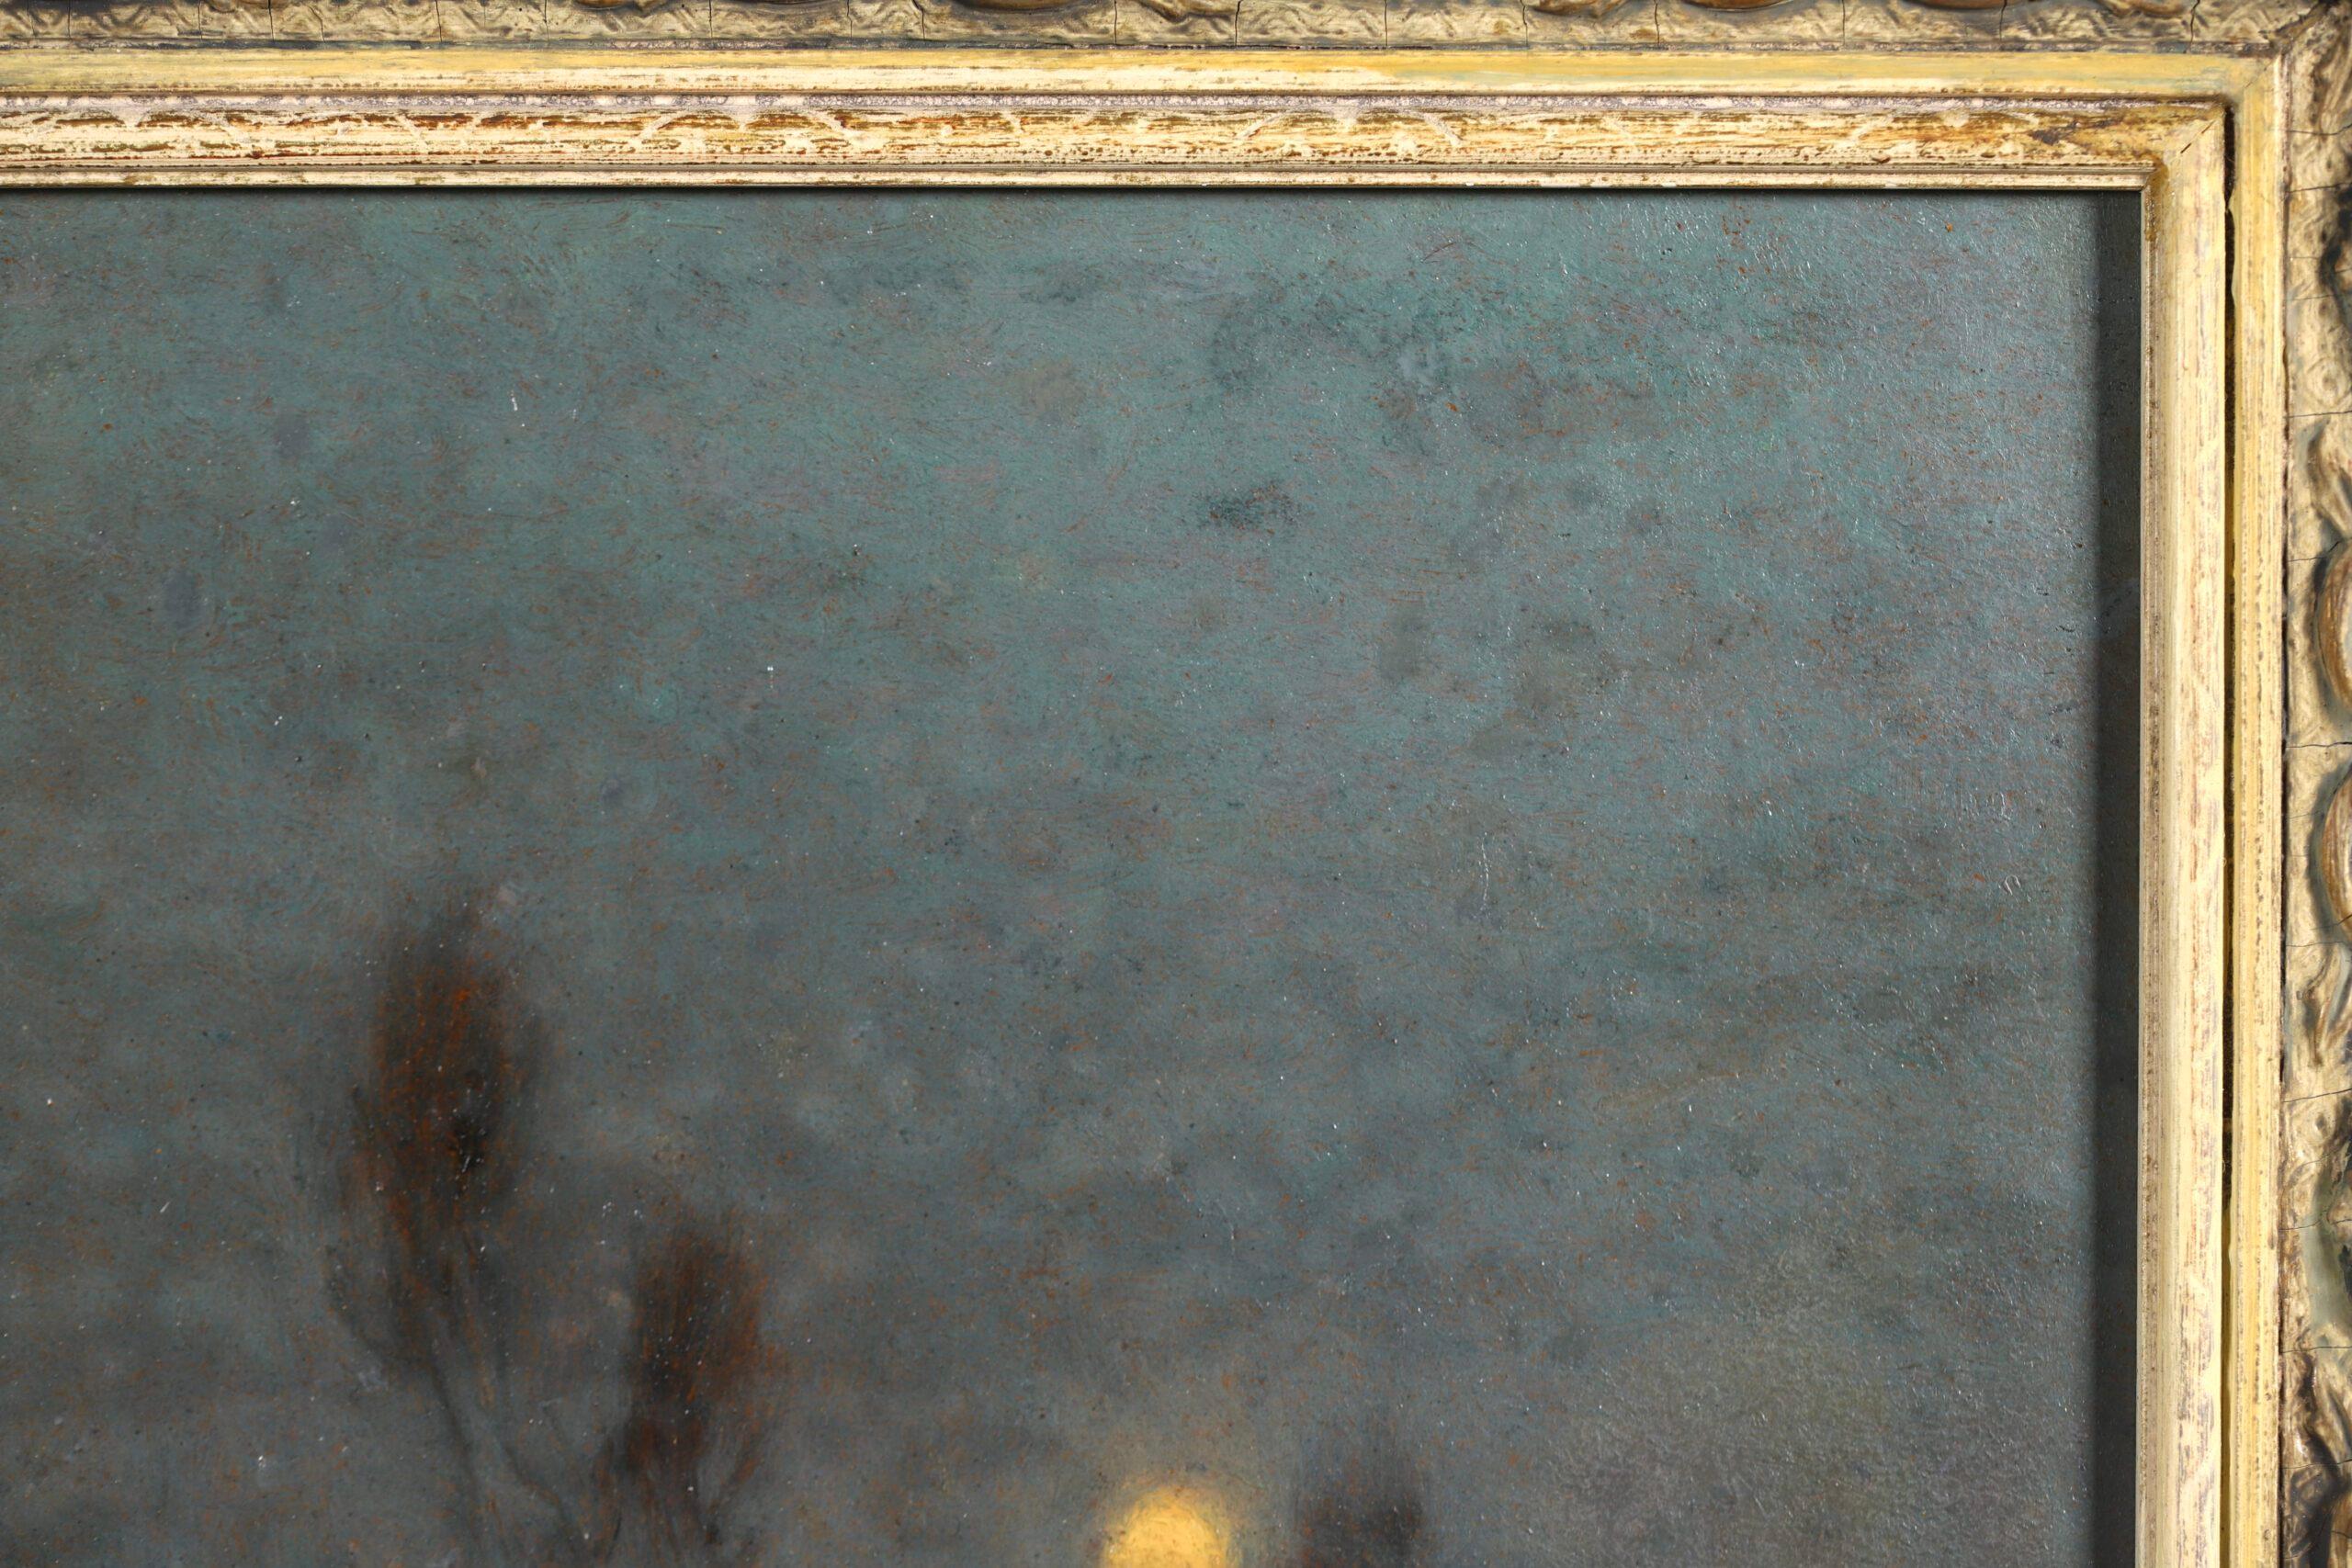 Paysage signé à l'huile sur panneau vers 1930 par le populaire peintre impressionniste français Alexandre Louis Jacob. L'œuvre représente une vue de la Seine au crépuscule. La lune, basse dans le ciel gris, brille d'un éclat jaune. En dessous